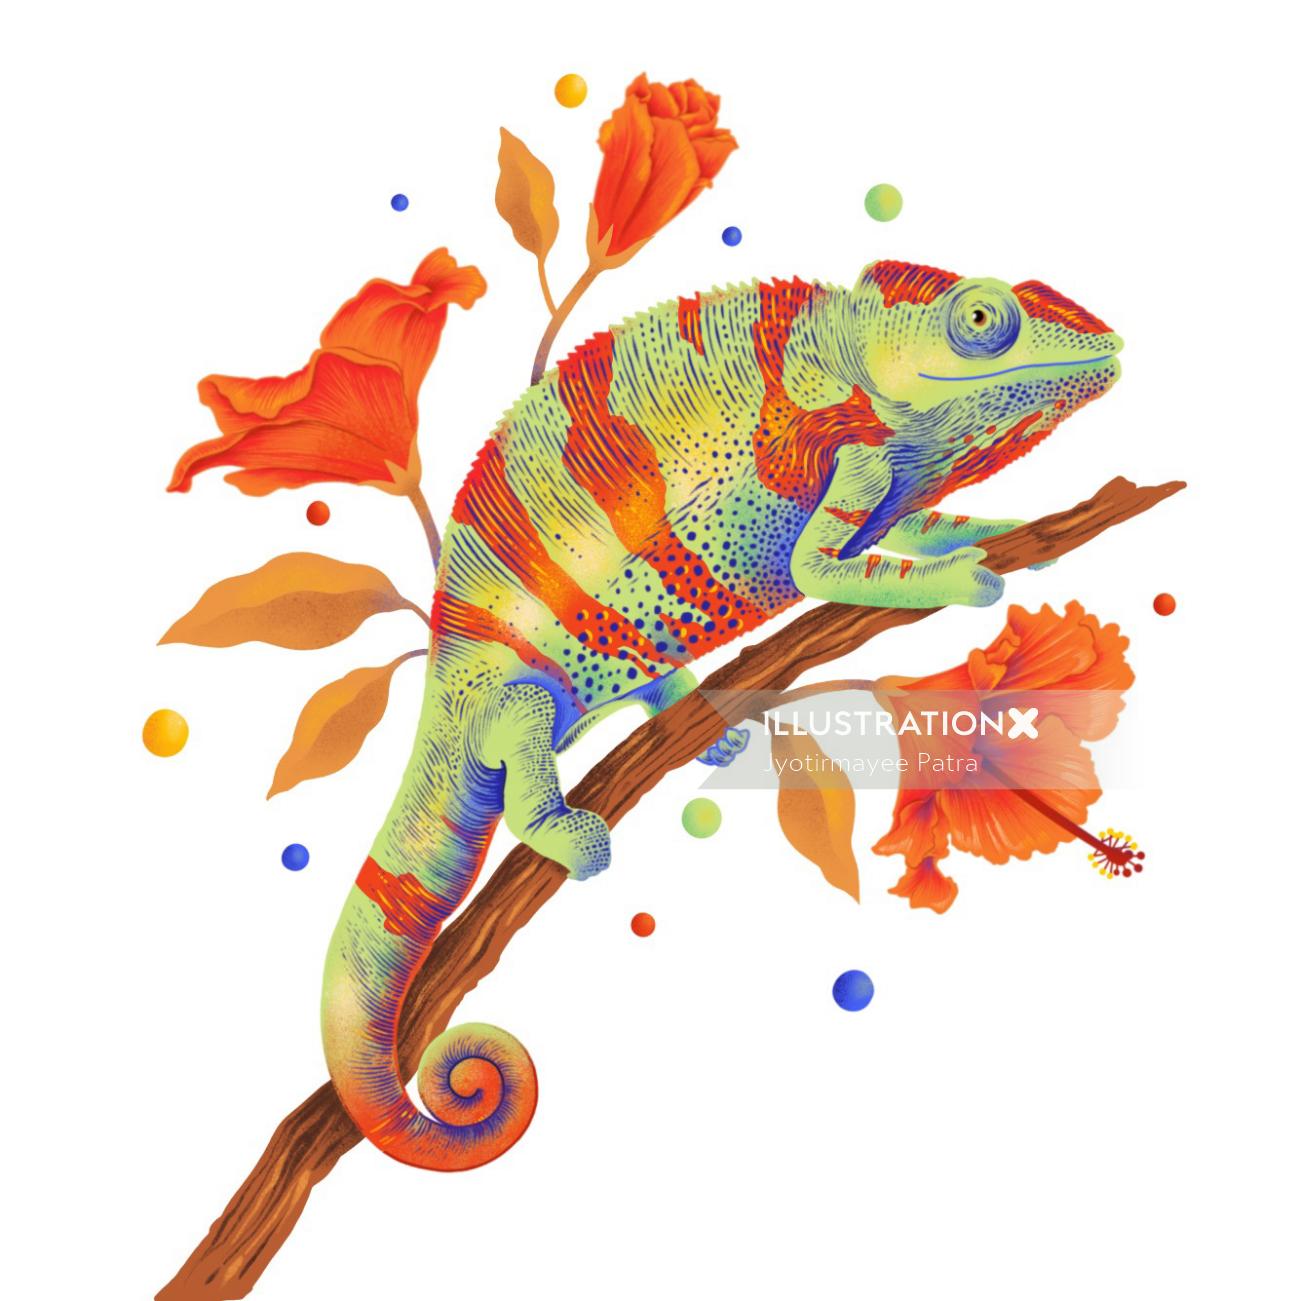 Ilustração de camaleão com cores vibrantes e texturas gráficas